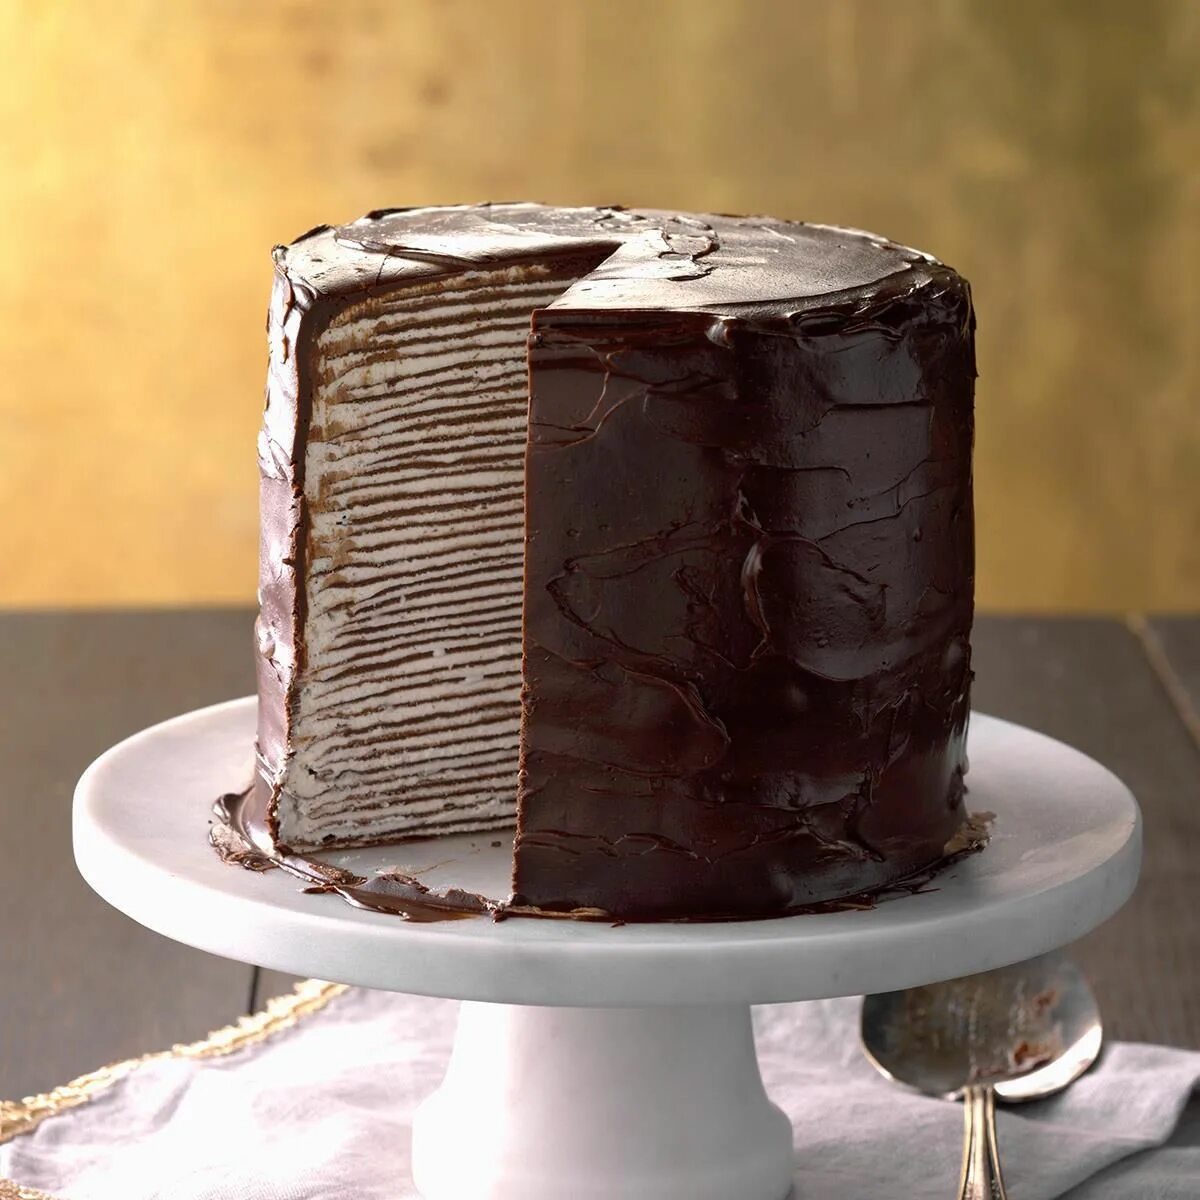 Ганаш для торта шоколадный. Шоколадный торт с шоколадным ганашом. Торт покрытый шоколадным ганашем. Шоколад для ганаша.